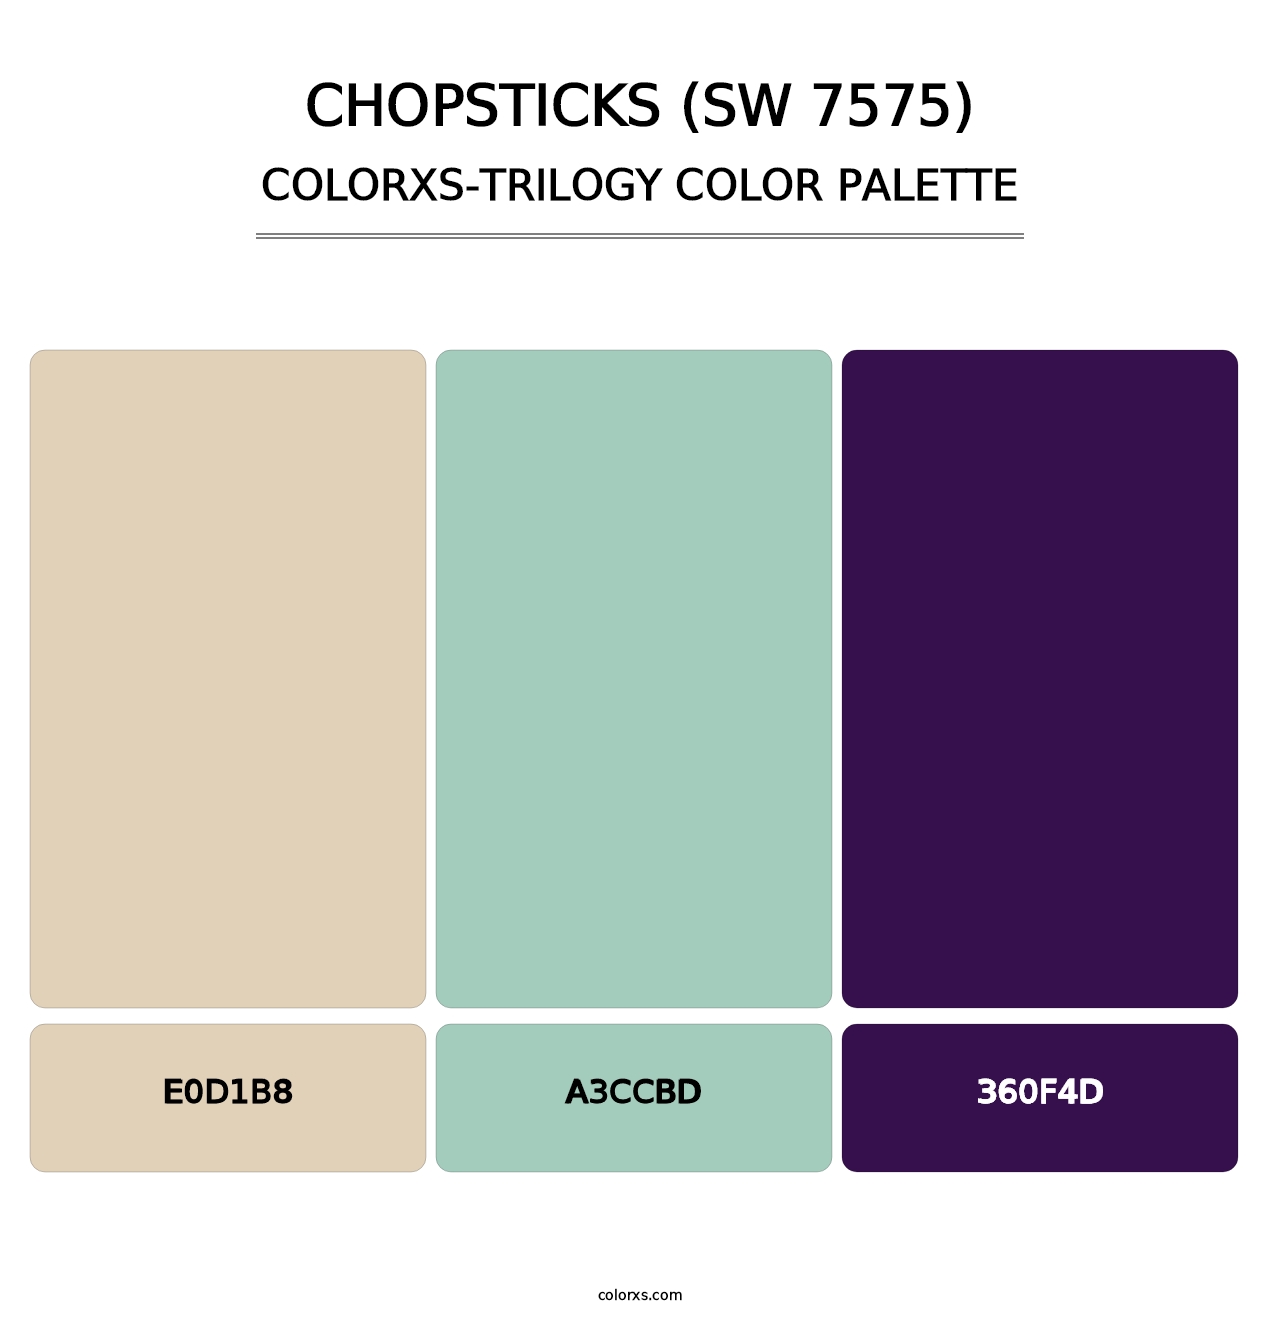 Chopsticks (SW 7575) - Colorxs Trilogy Palette